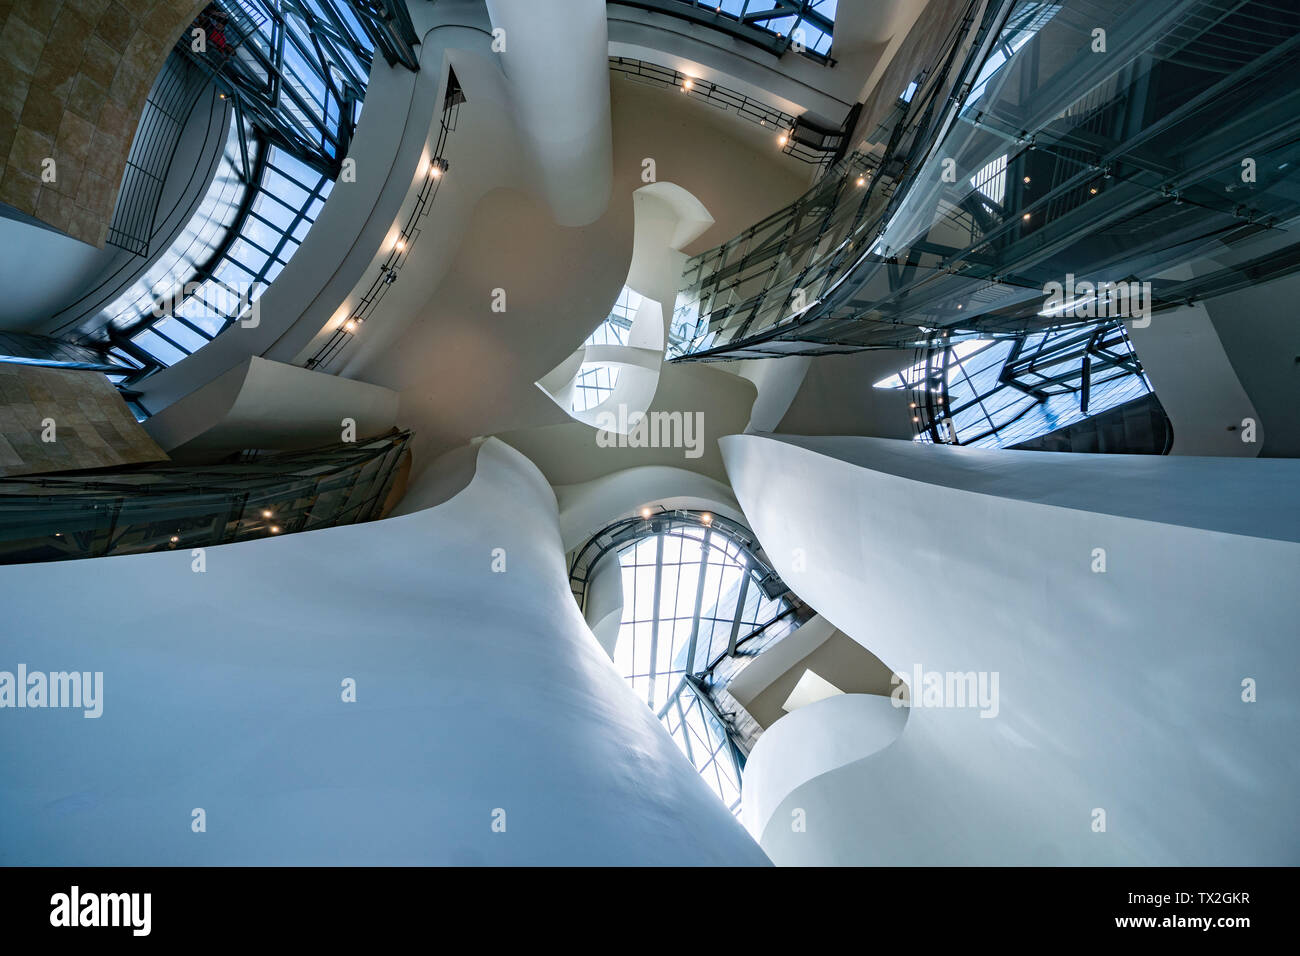 Bilbao, Spagna. Il 23 giugno, 2019. Vista interna del Museo Guggenheim di Bilbao. Il palazzo è una delle più celebri opere dell'architetto Frank Gehry. Il museo, che hanno un costo di circa 140 milioni di euro al momento, è stato aperto nel 1997. Credito: Frank Rumpenhorst/dpa/Alamy Live News Foto Stock